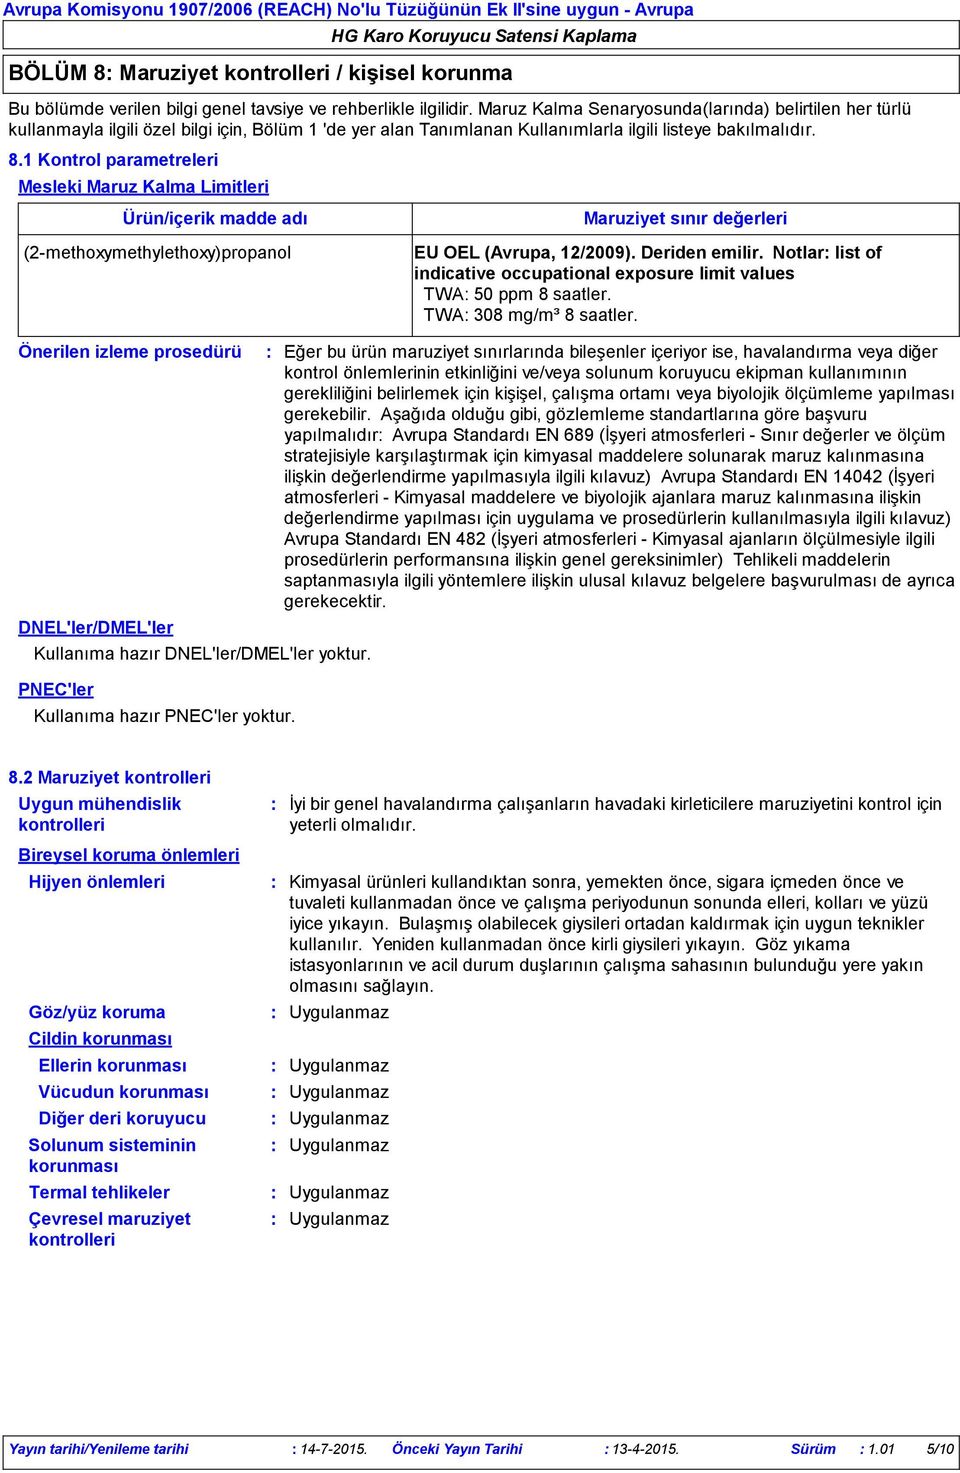 1 Kontrol parametreleri Mesleki Maruz Kalma Limitleri Ürün/içerik madde adı (2methoxymethylethoxy)propanol Maruziyet sınır değerleri EU OEL (Avrupa, 12/2009). Deriden emilir.